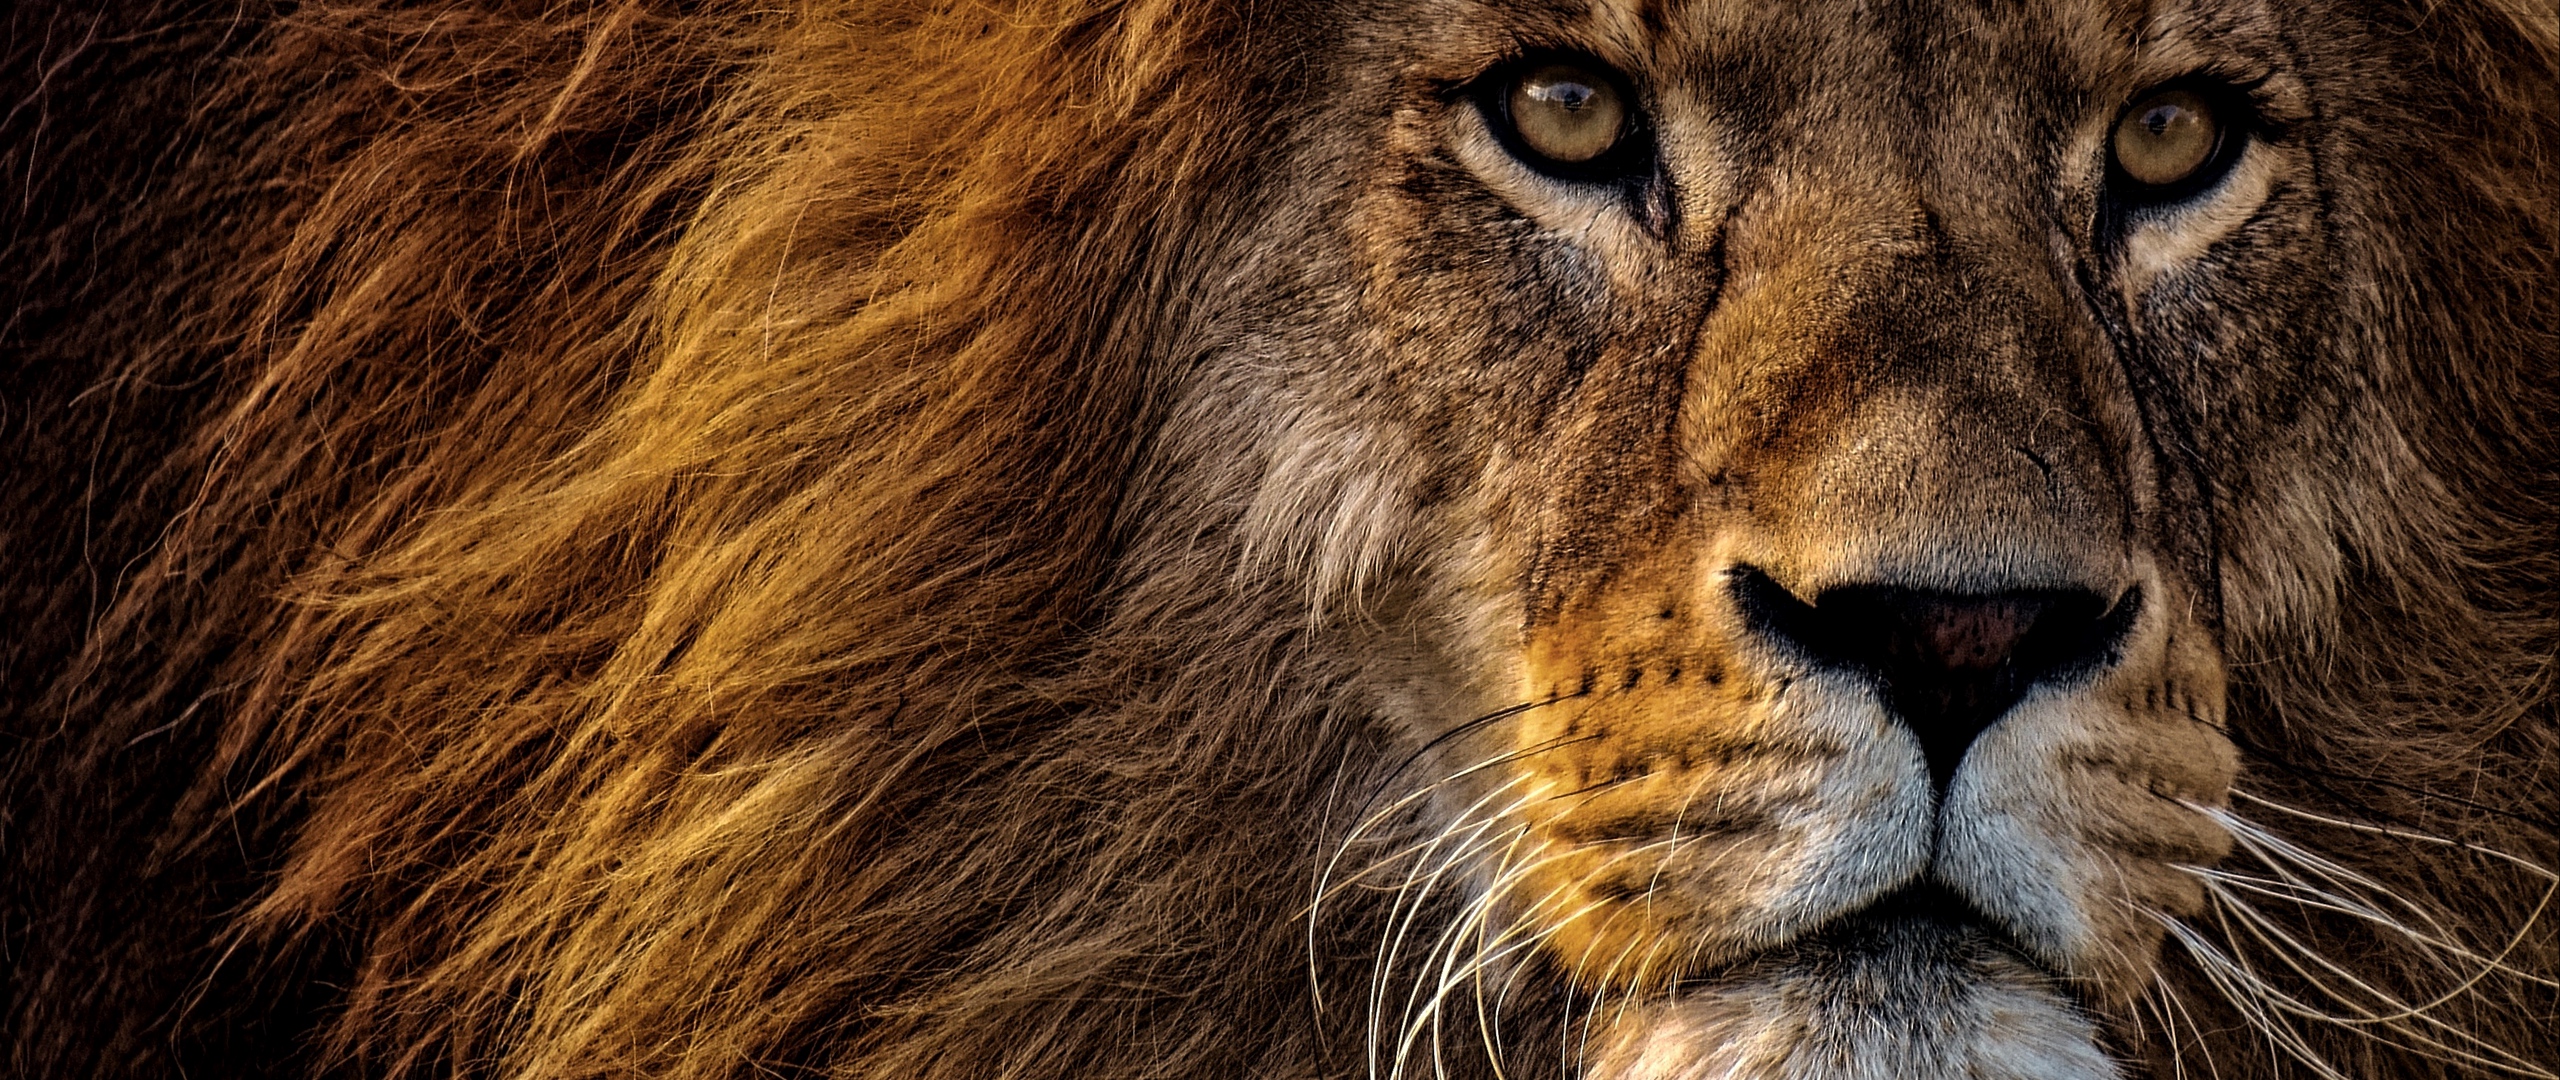 Wallpaper Lion, Predator, King Of Animals, Mane, Muzzle, - Lion Wallpaper Black Download - HD Wallpaper 